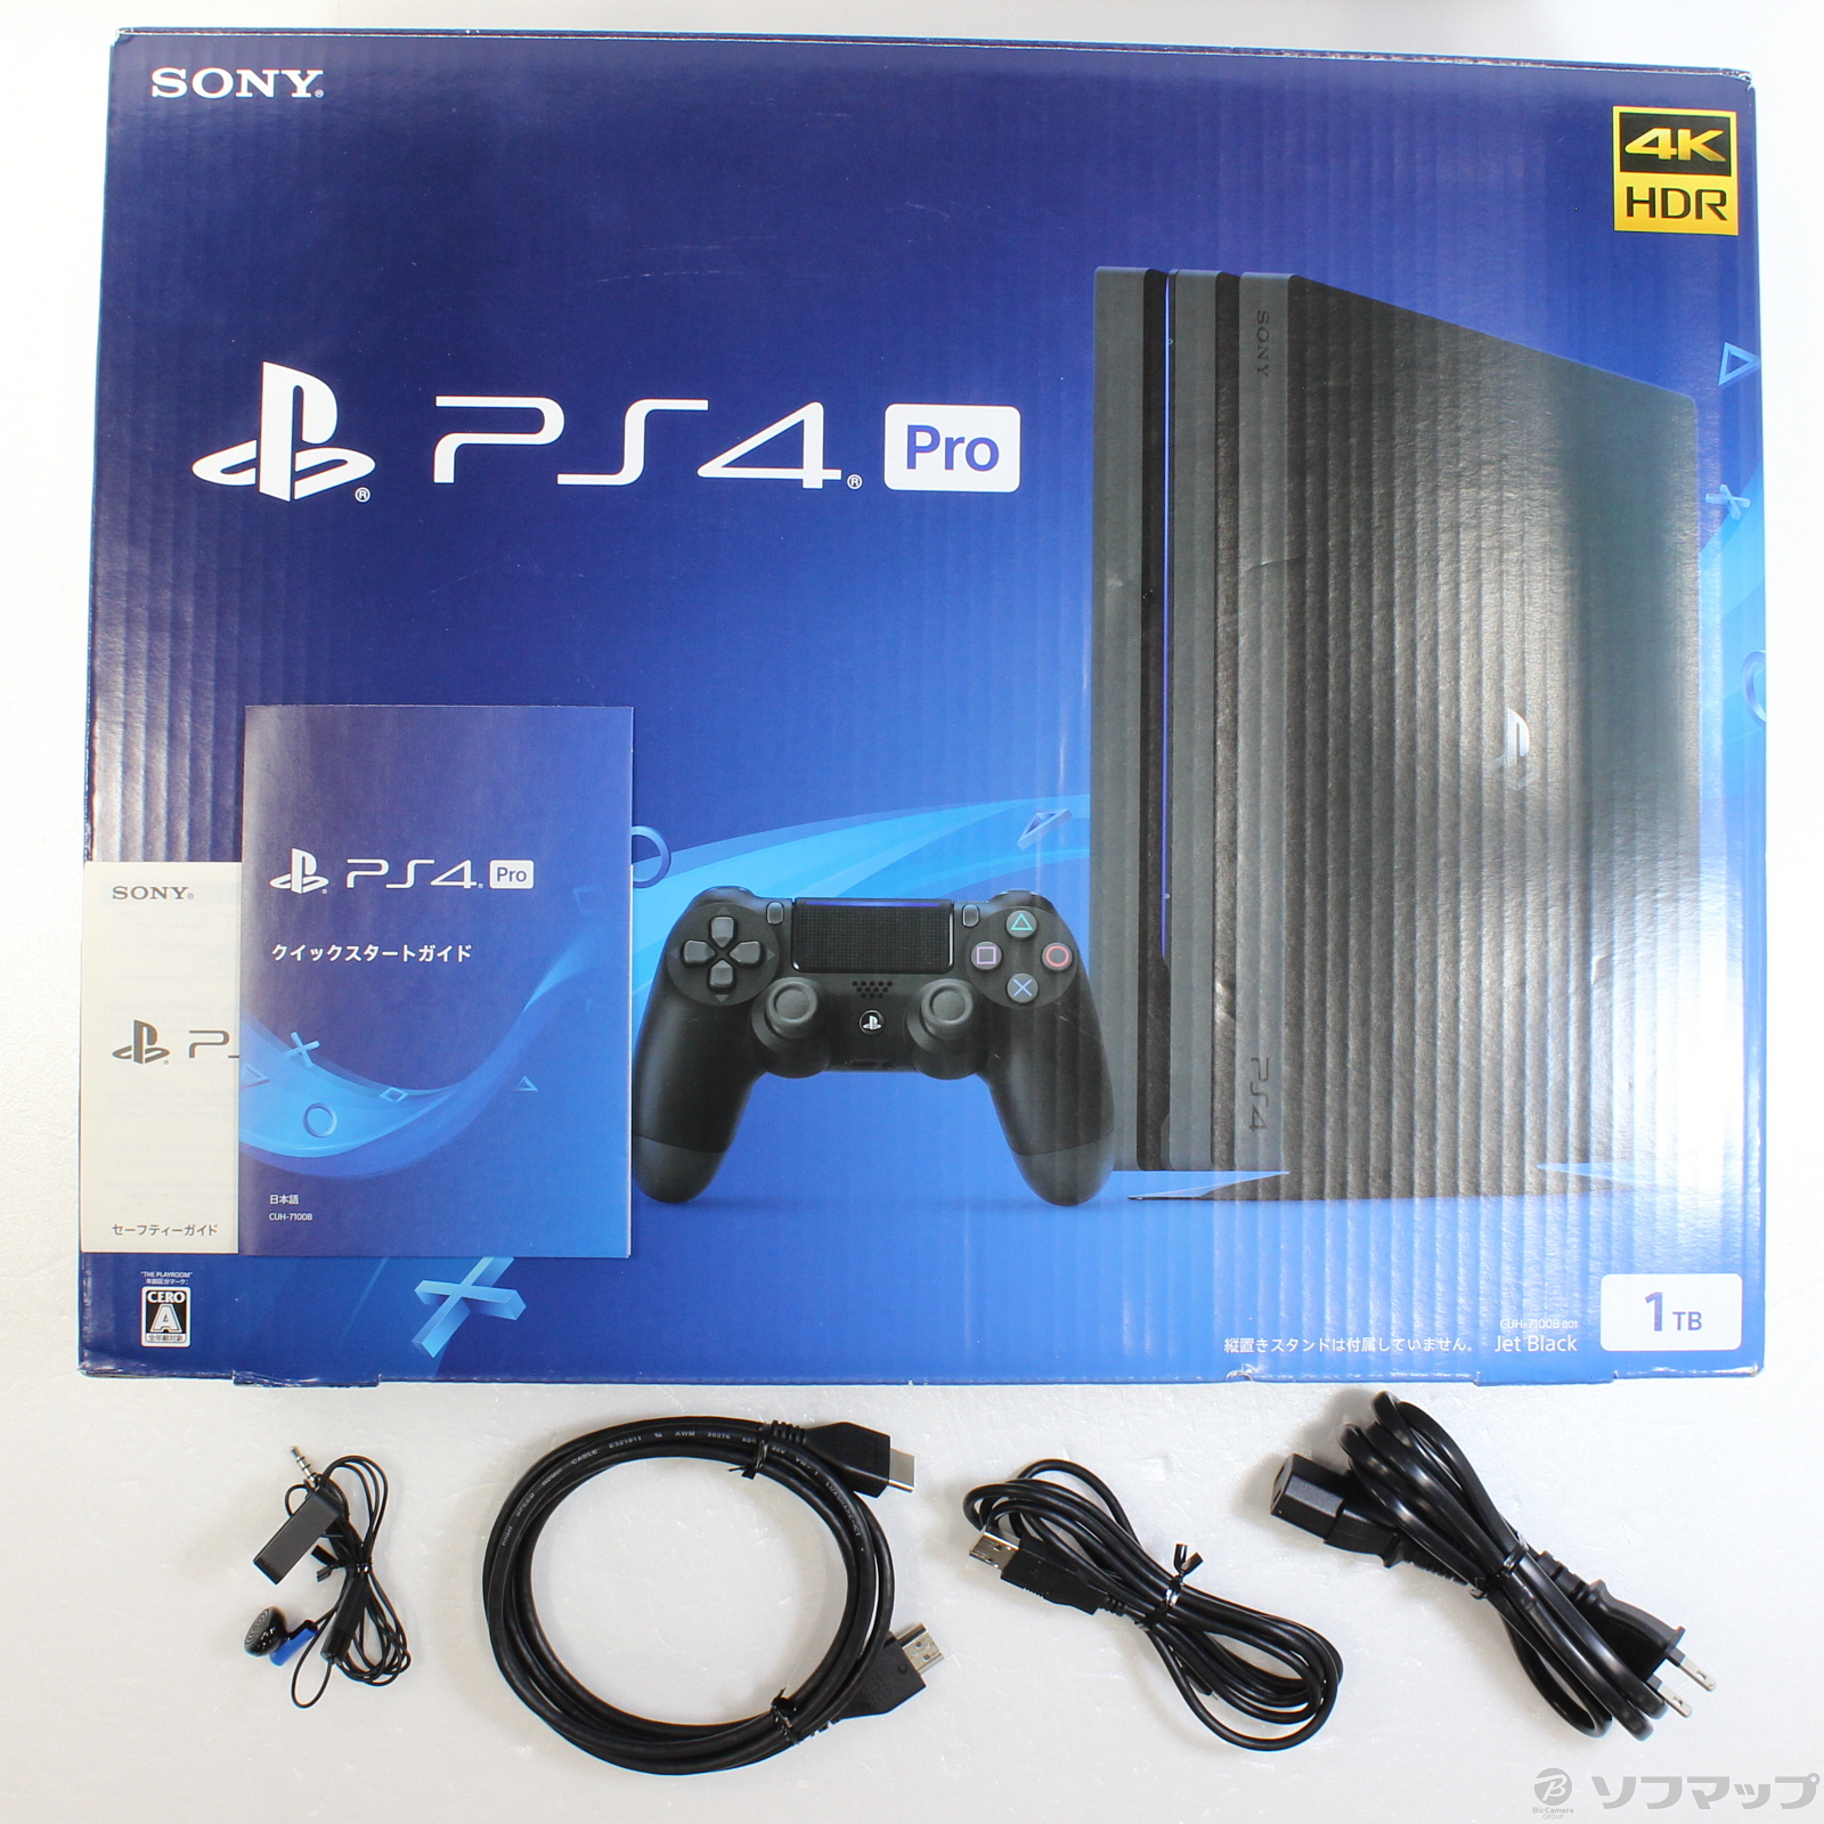 PlayStation4Pro CUH-7100B 1TB - www.sorbillomenu.com